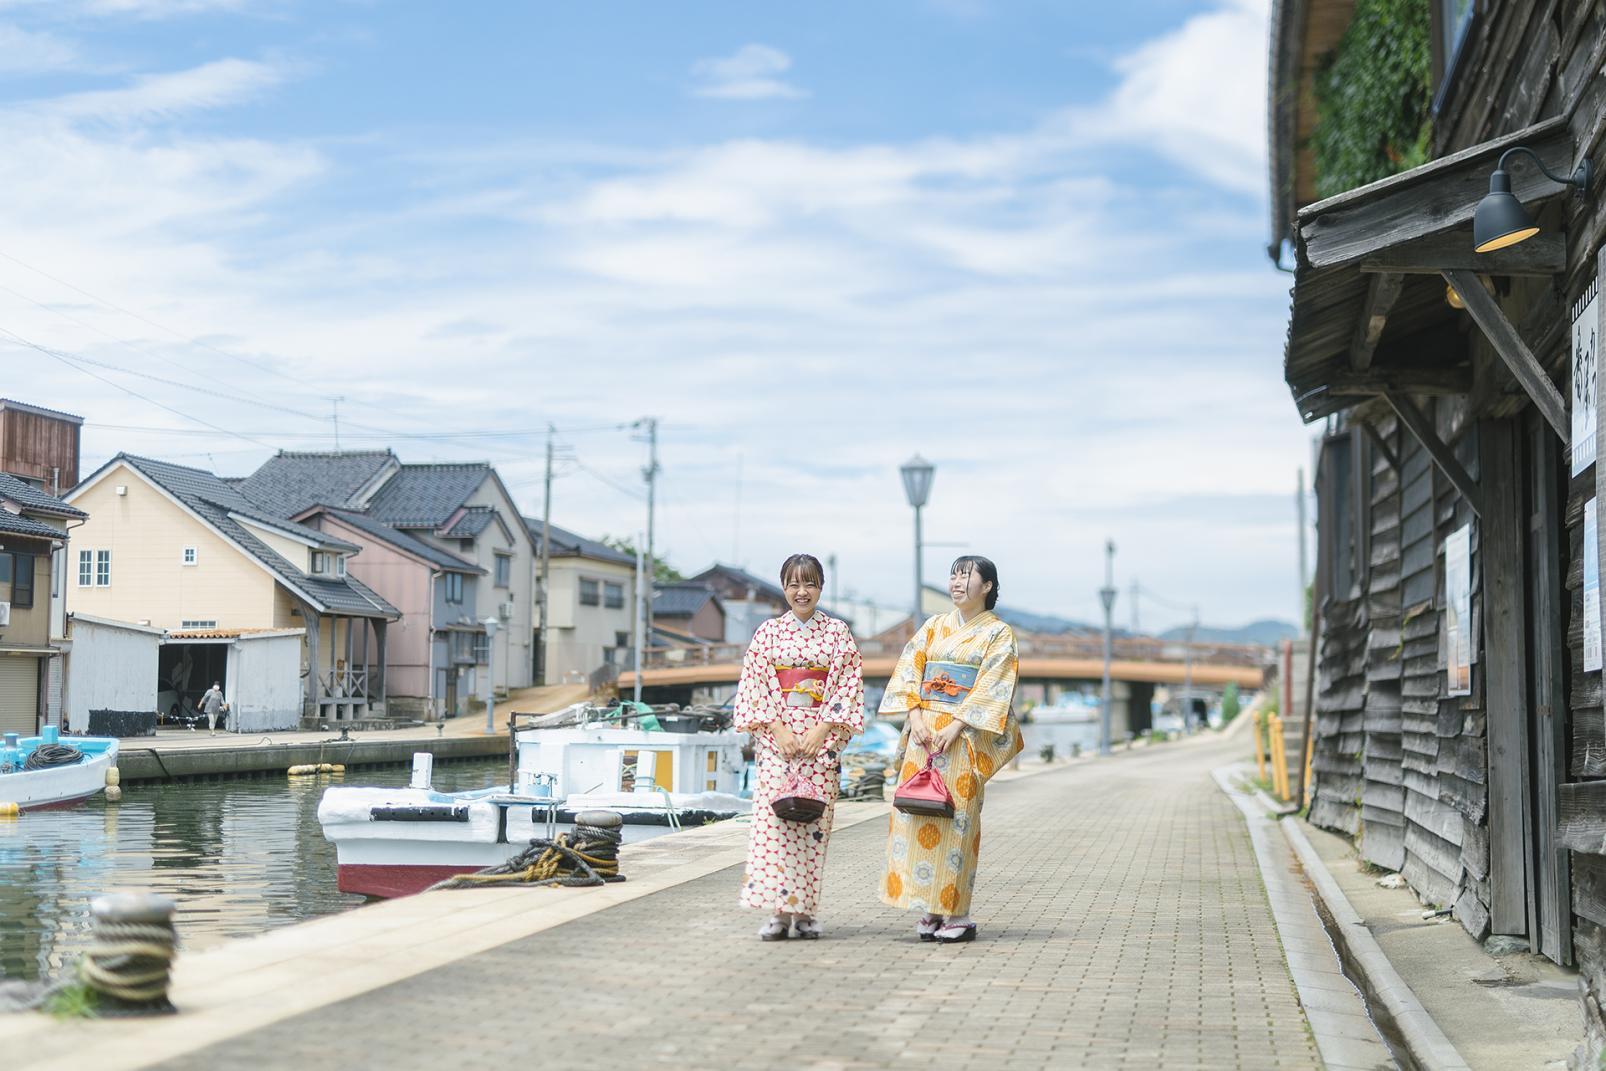 แต่งชุดกิโมโนเดินเล่นในย่านอุจิคาวะ “เวนิสแห่งญี่ปุ่น” ล่องเรือท่องเที่ยวชินมินาโตะ ไปยังอ่าวโทยามะ (พื้นที่อุจิคาวะ เมืองอิมิสึ จังหวัดโทยามะ)-1